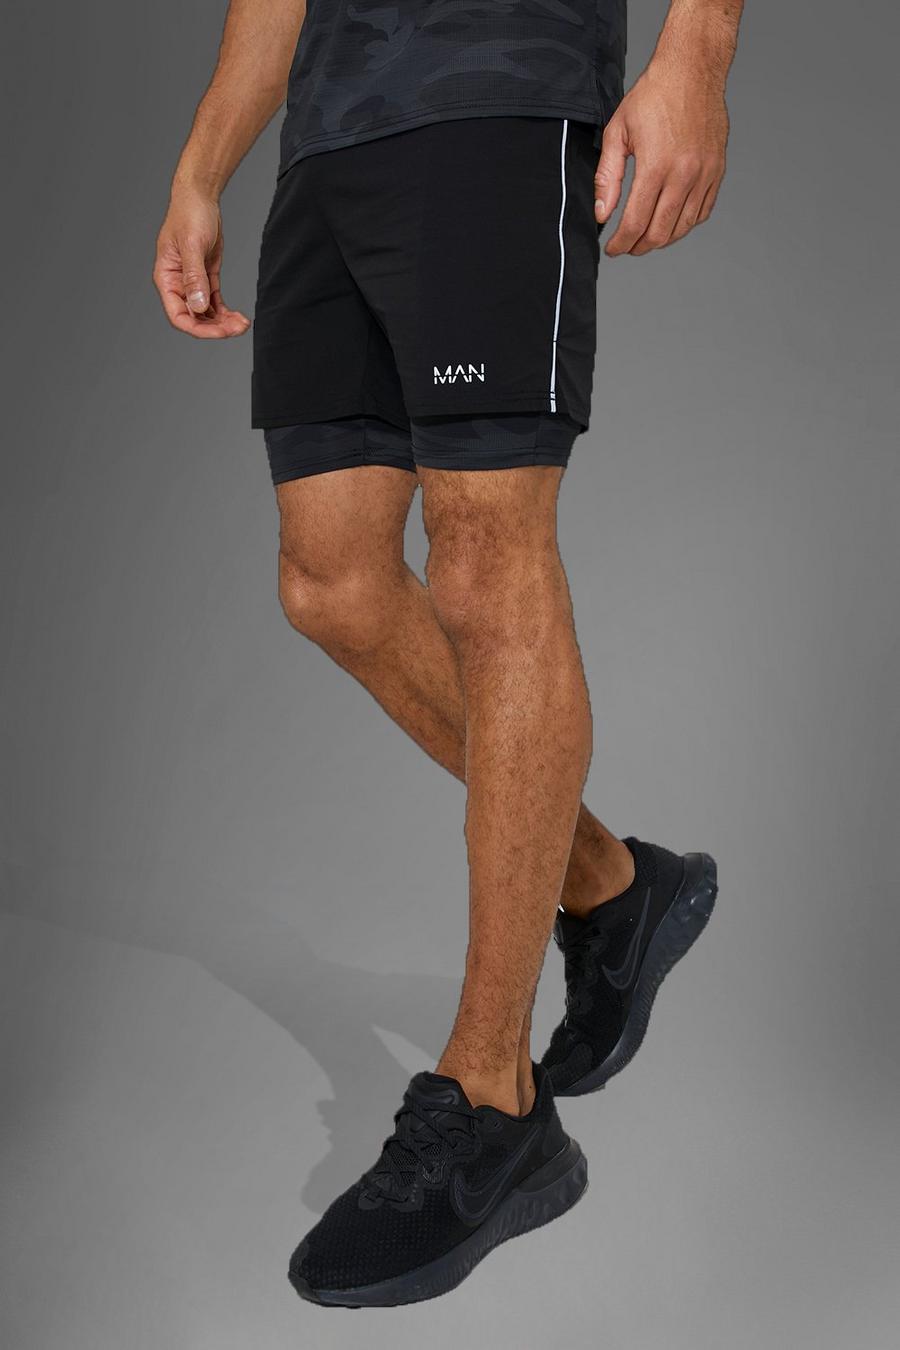 Pantalón corto MAN Active deportivo de nailon 2 en 1 con estampado de camuflaje, Black image number 1